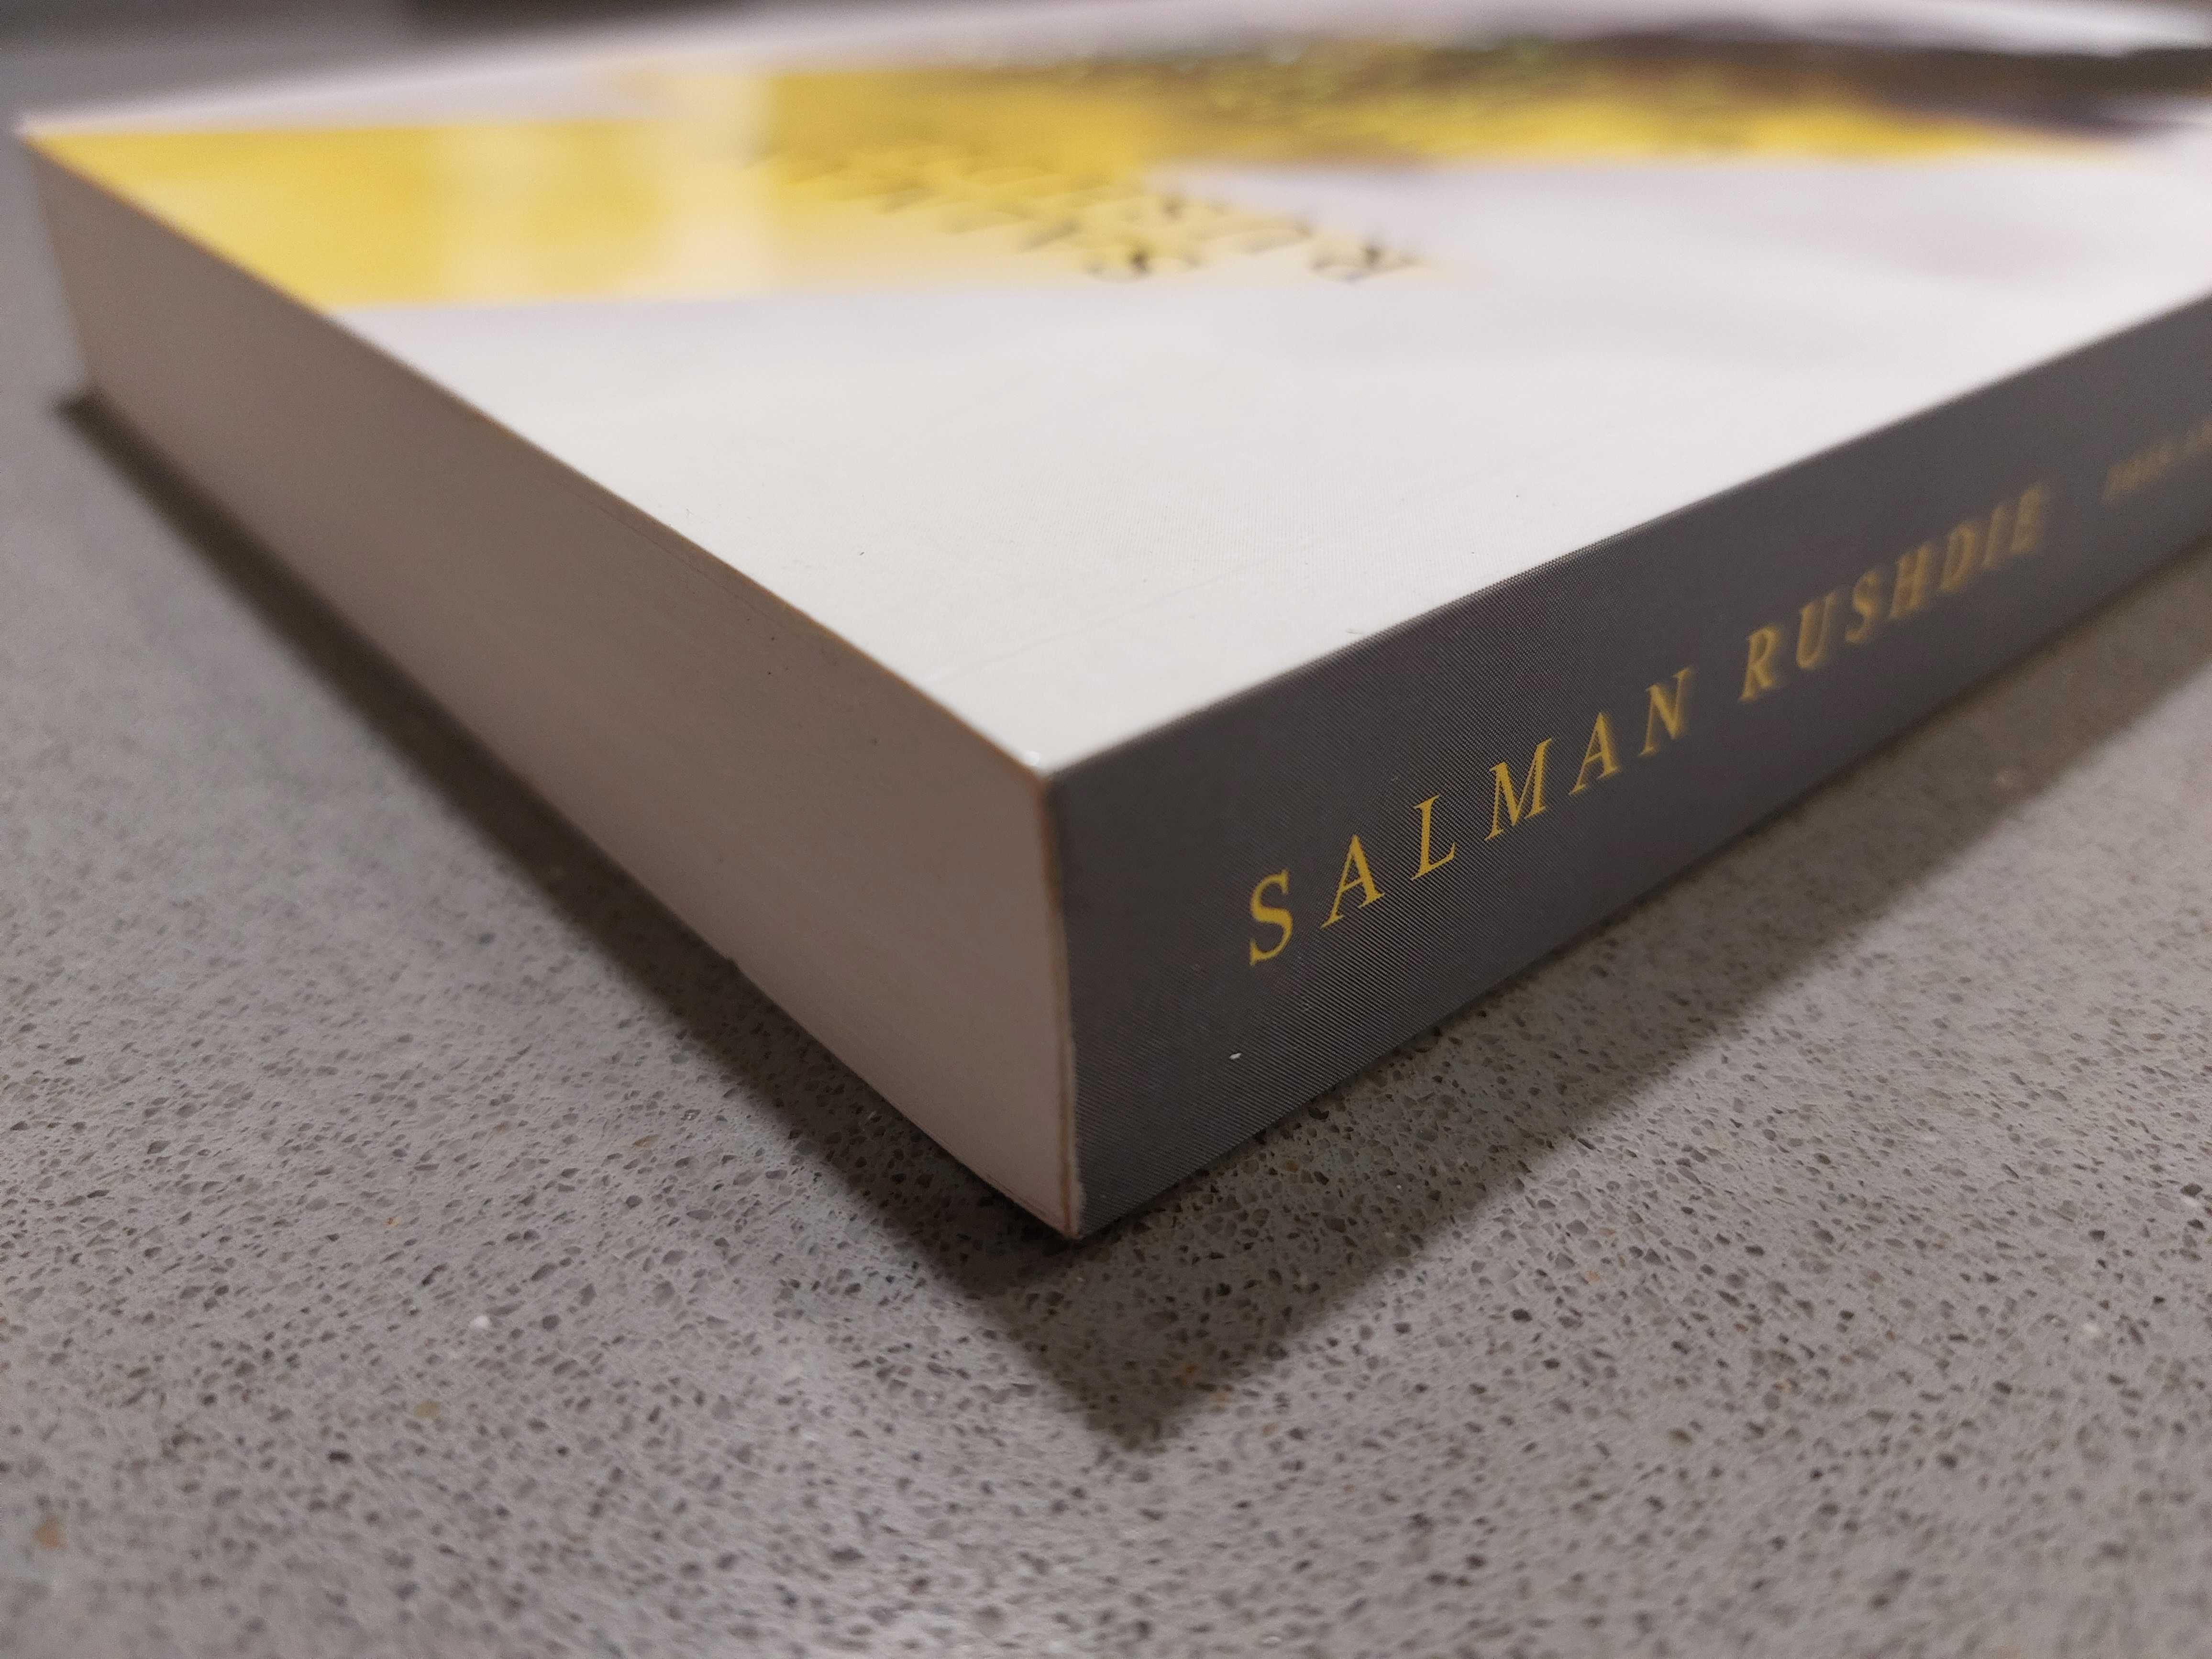 Salman Rushdie - Dois Anos, Oito Meses e Vinte e Oito Noites